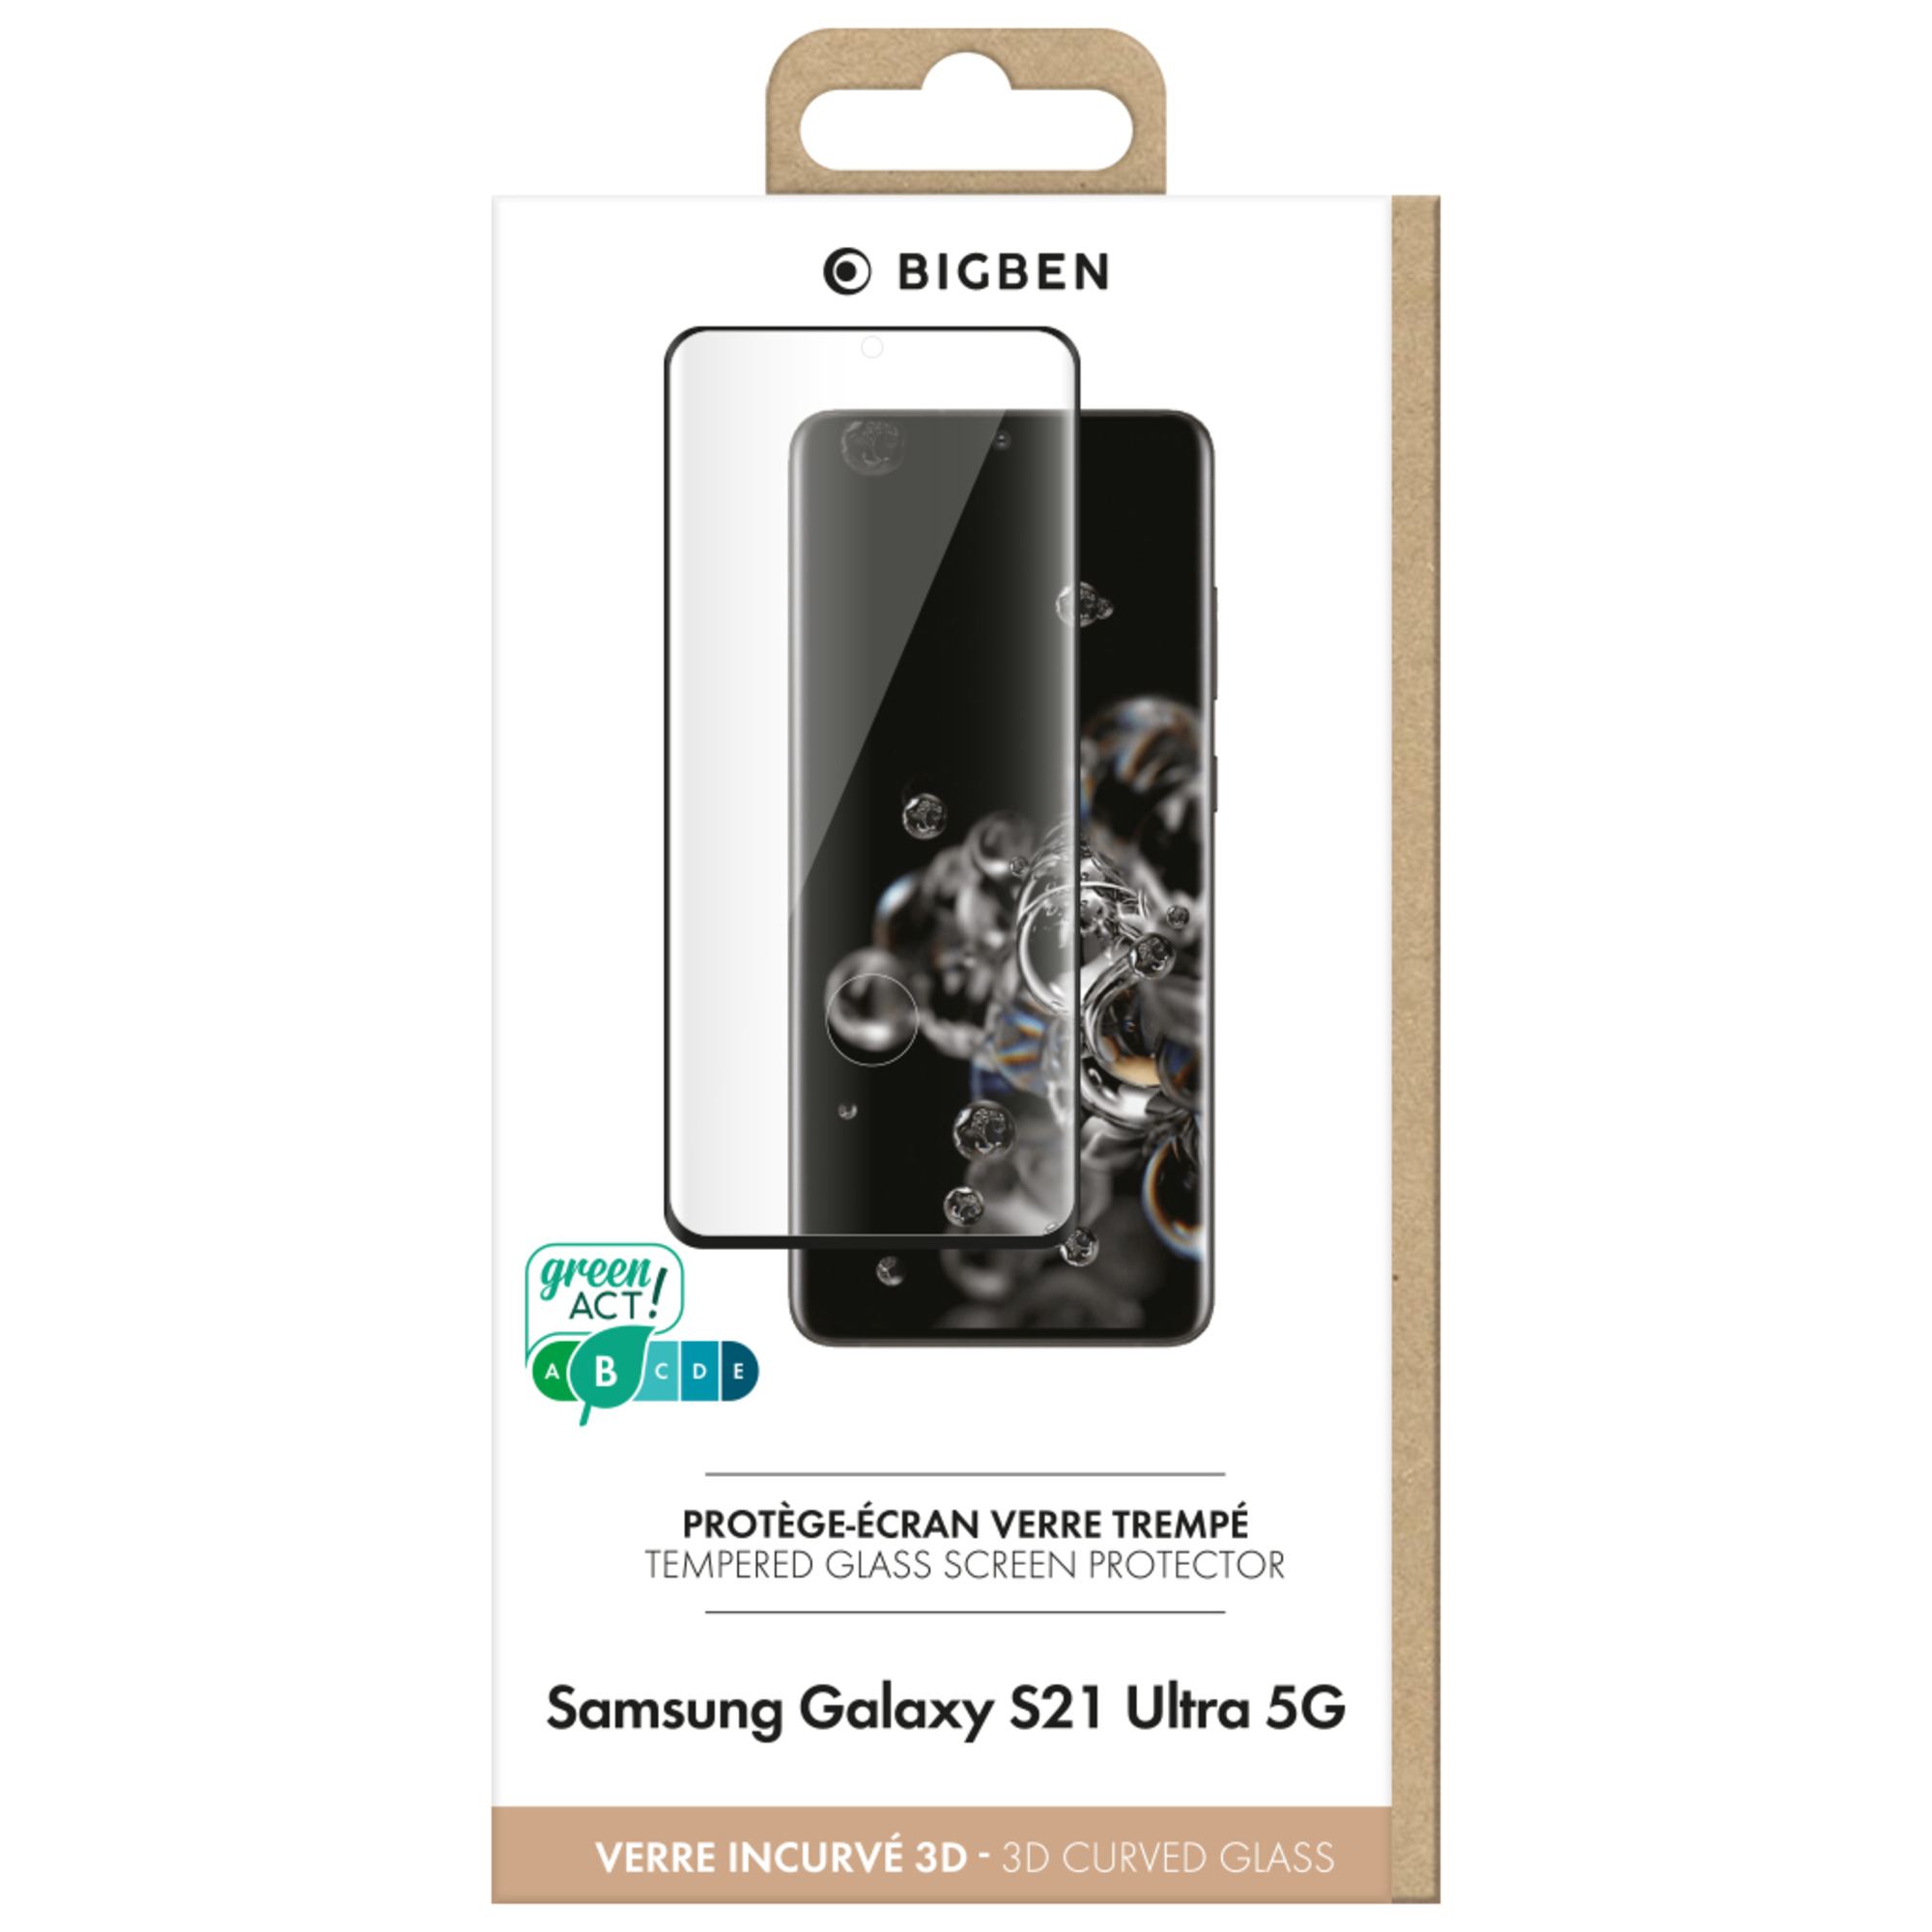 Protège écran 3D Samsung G S21 Ultra 5G Bigben - Neuf